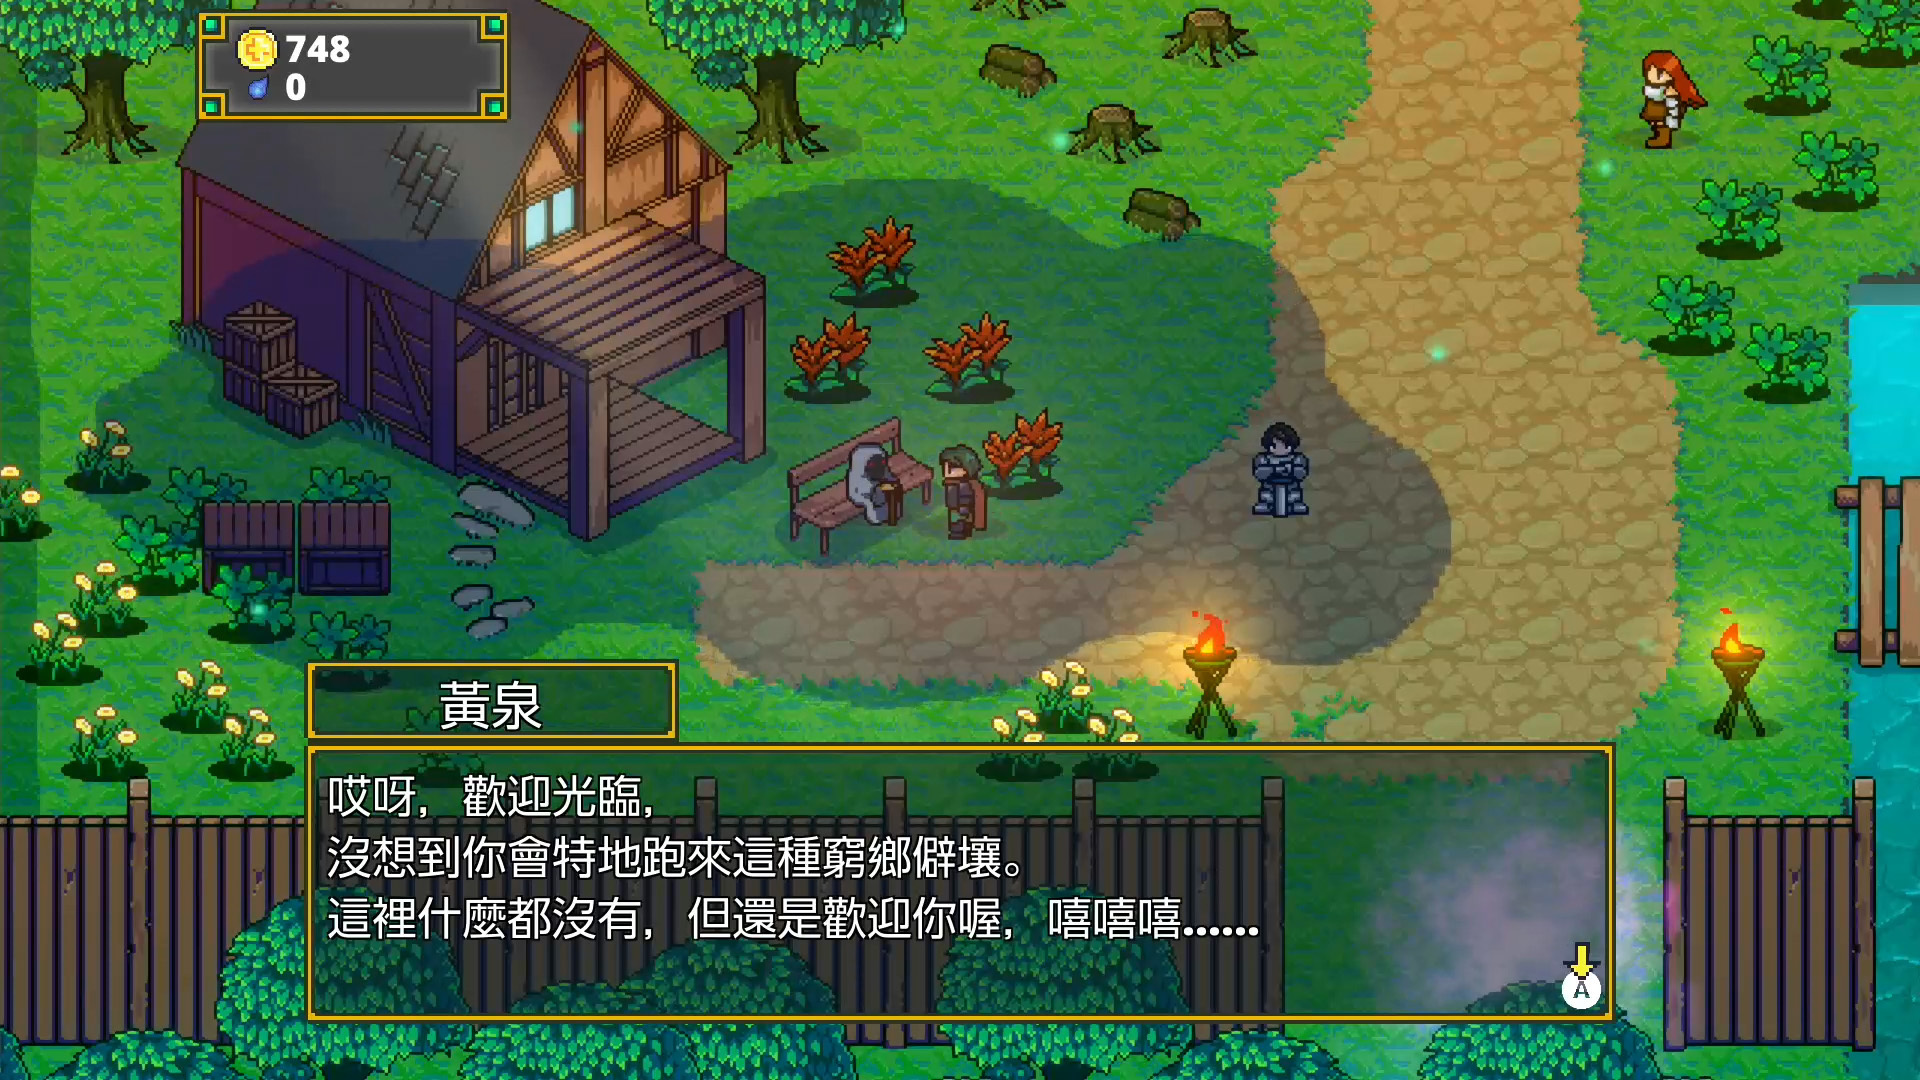 迷宫探险动作游戏《迷宫传说》Switch 中文数位下载版 10 月 20 日上市